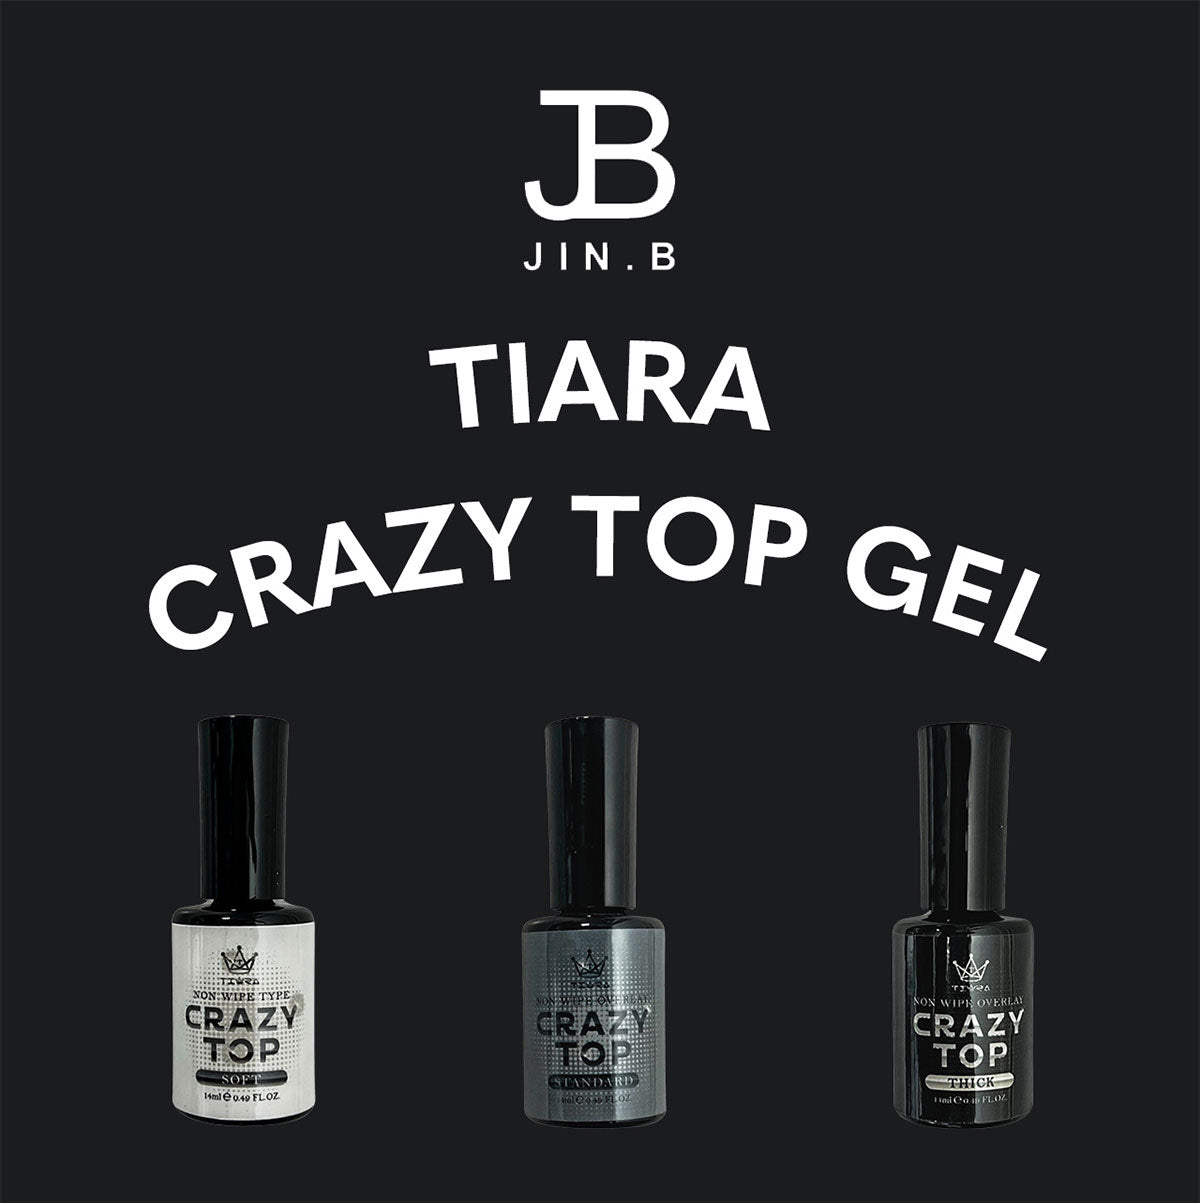 Jin.b Tiara Crazy Top